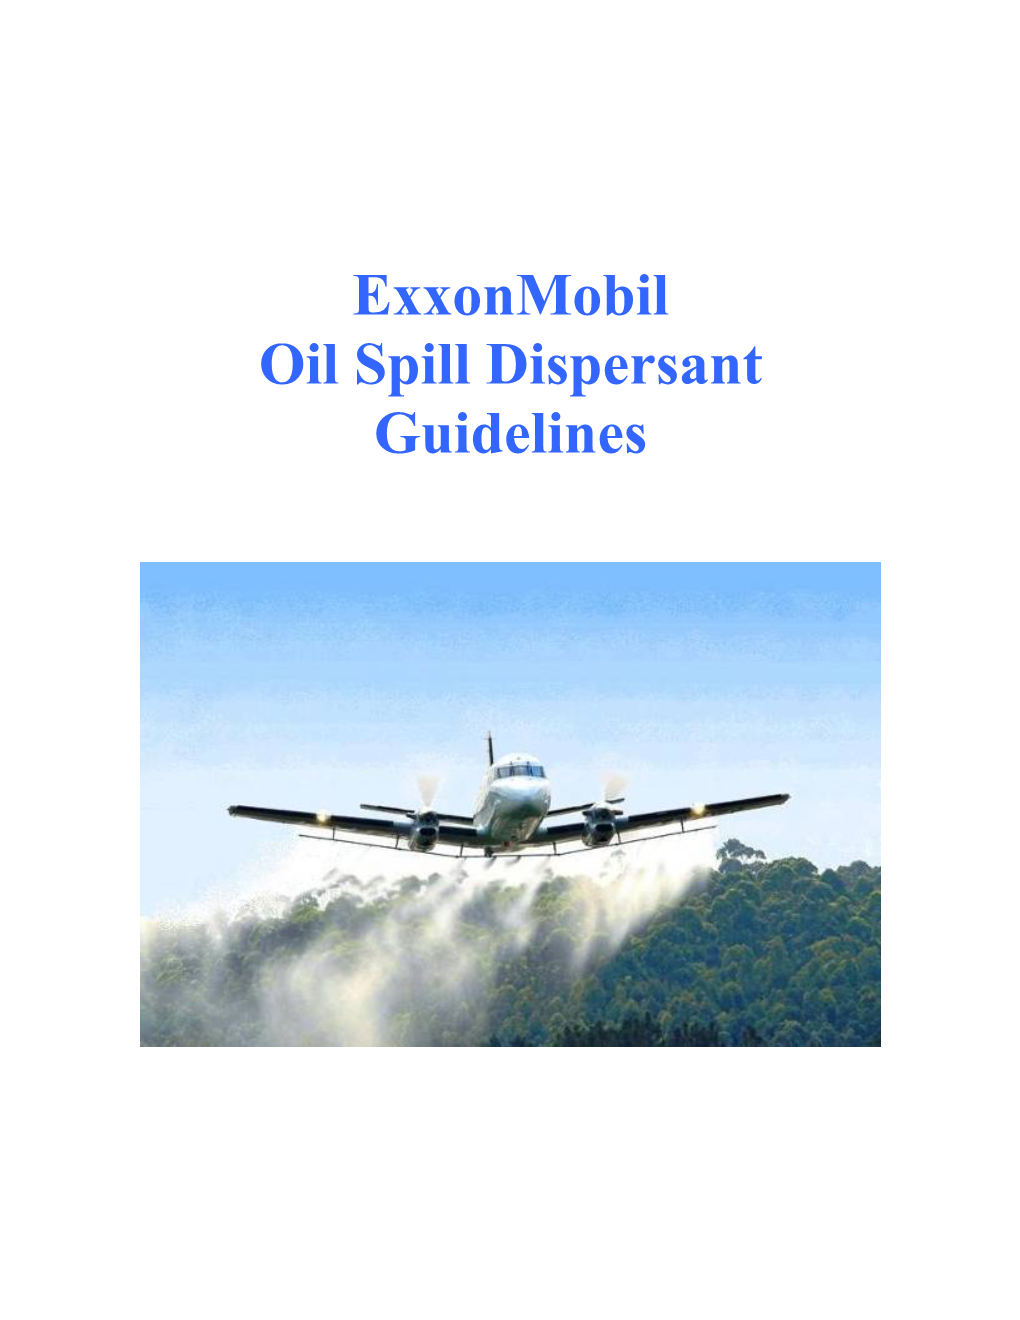 Exxonmobil Oil Spill Dispersant Guidelines